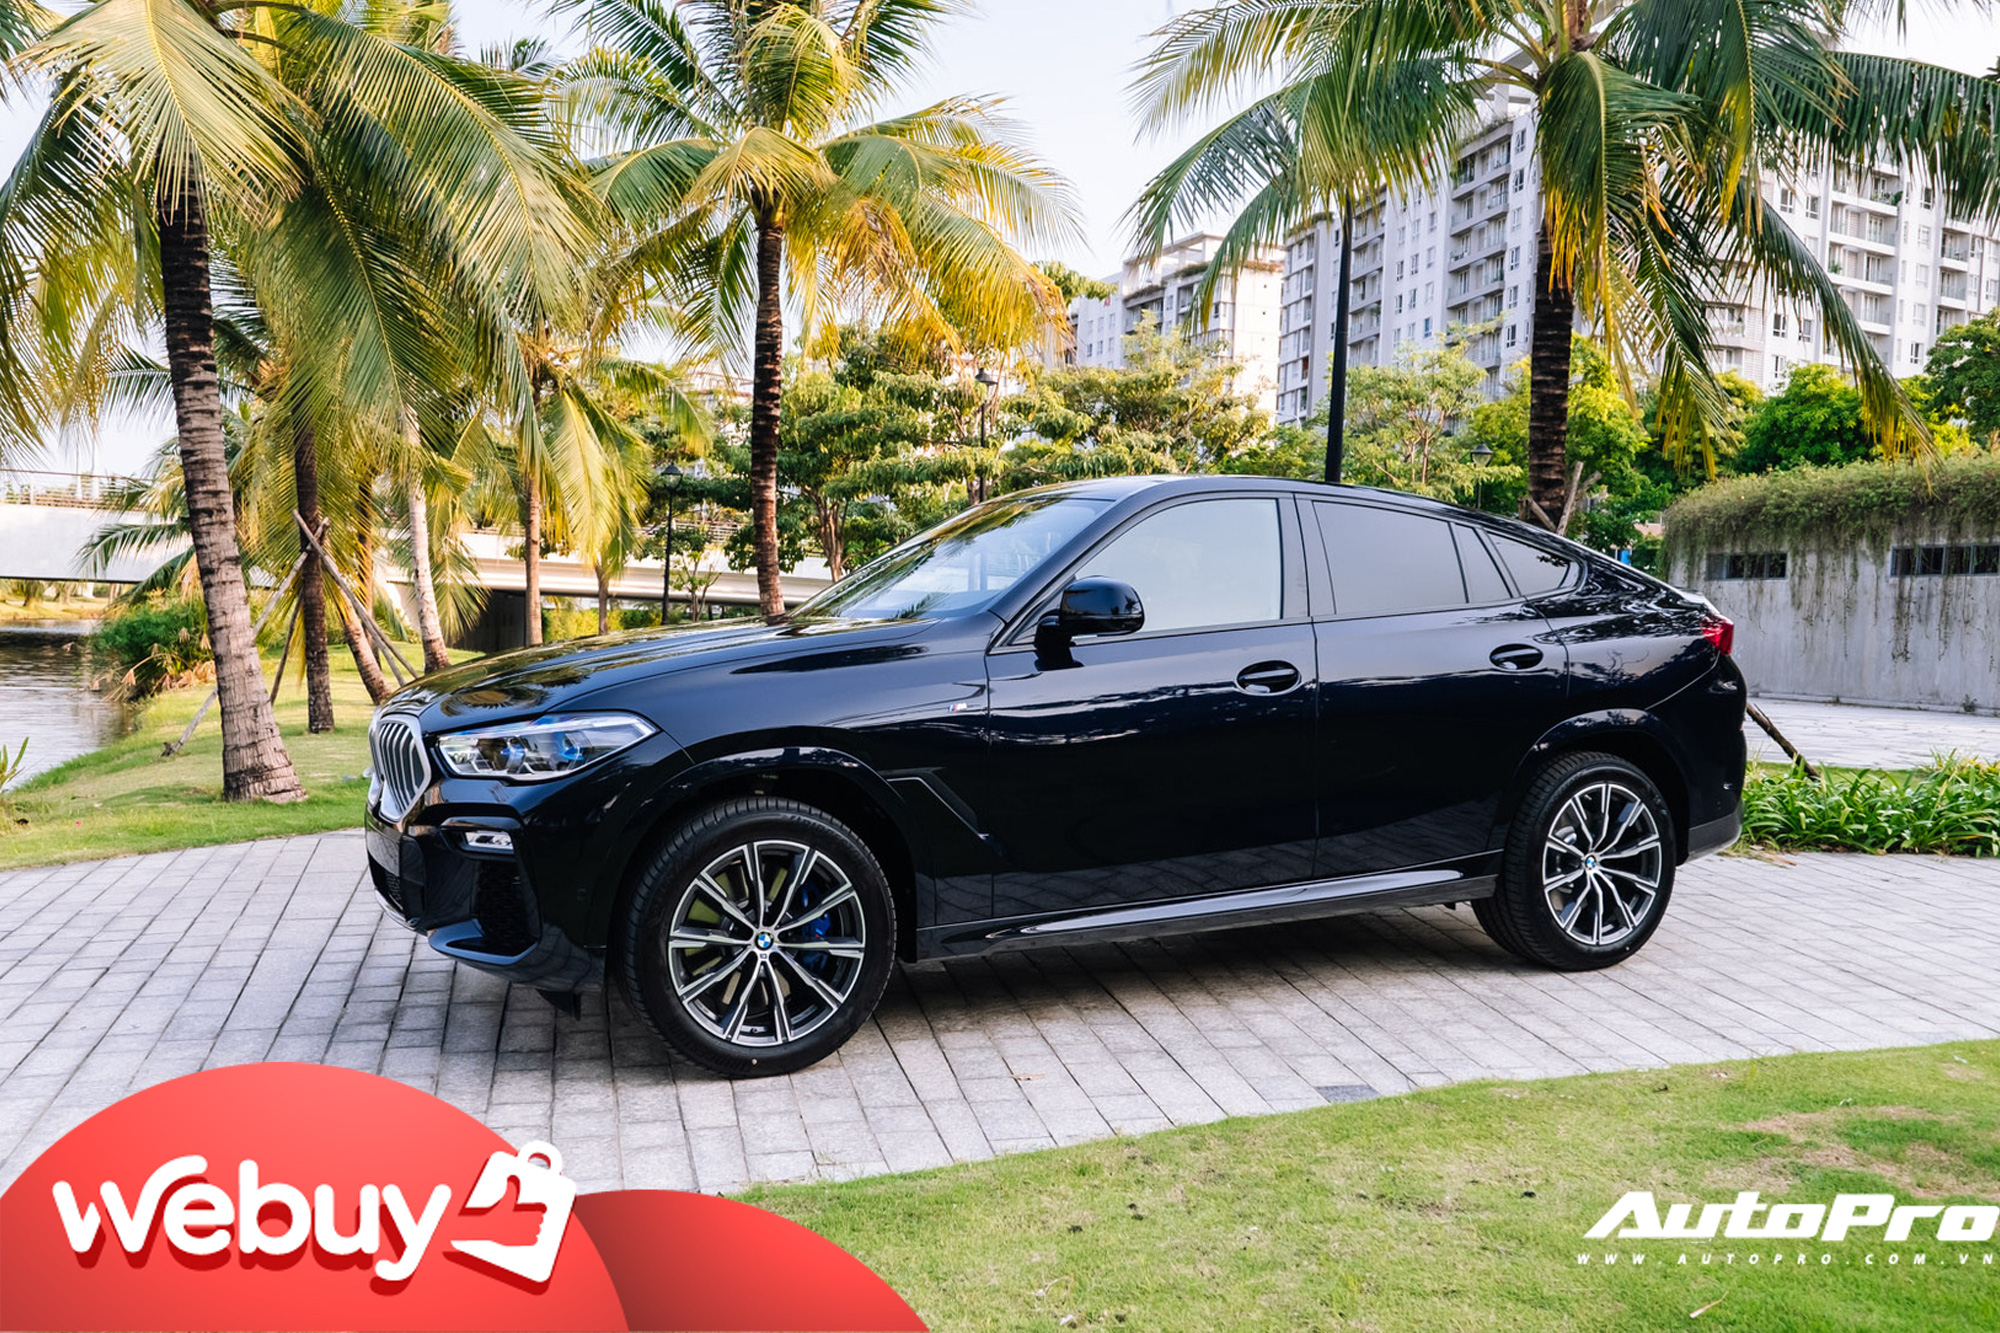 'Xe chơi' BMW X6 2020 giá hơn 4,8 tỷ đồng tại Việt Nam: Cao hơn đời cũ gần 1 tỷ đồng, tham vọng đối đầu Mercedes GLE Coupe